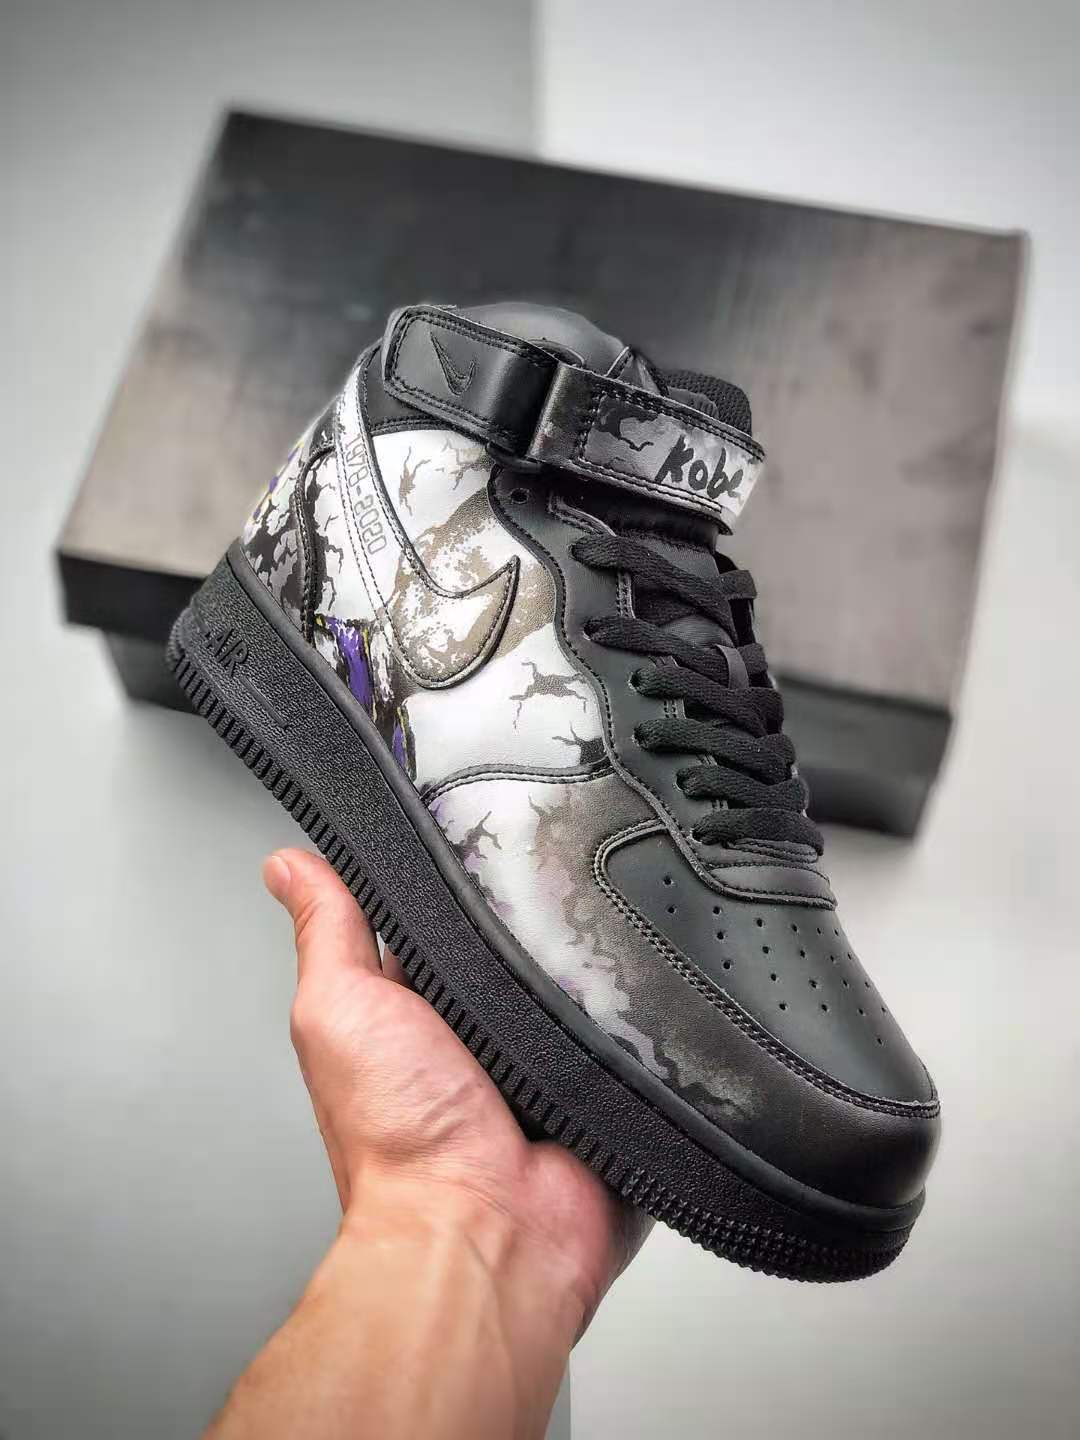 Nike Air Force 1 High 'Kobe' AQ8021-002 - Iconic Kobe Bryant Tribute Sneakers